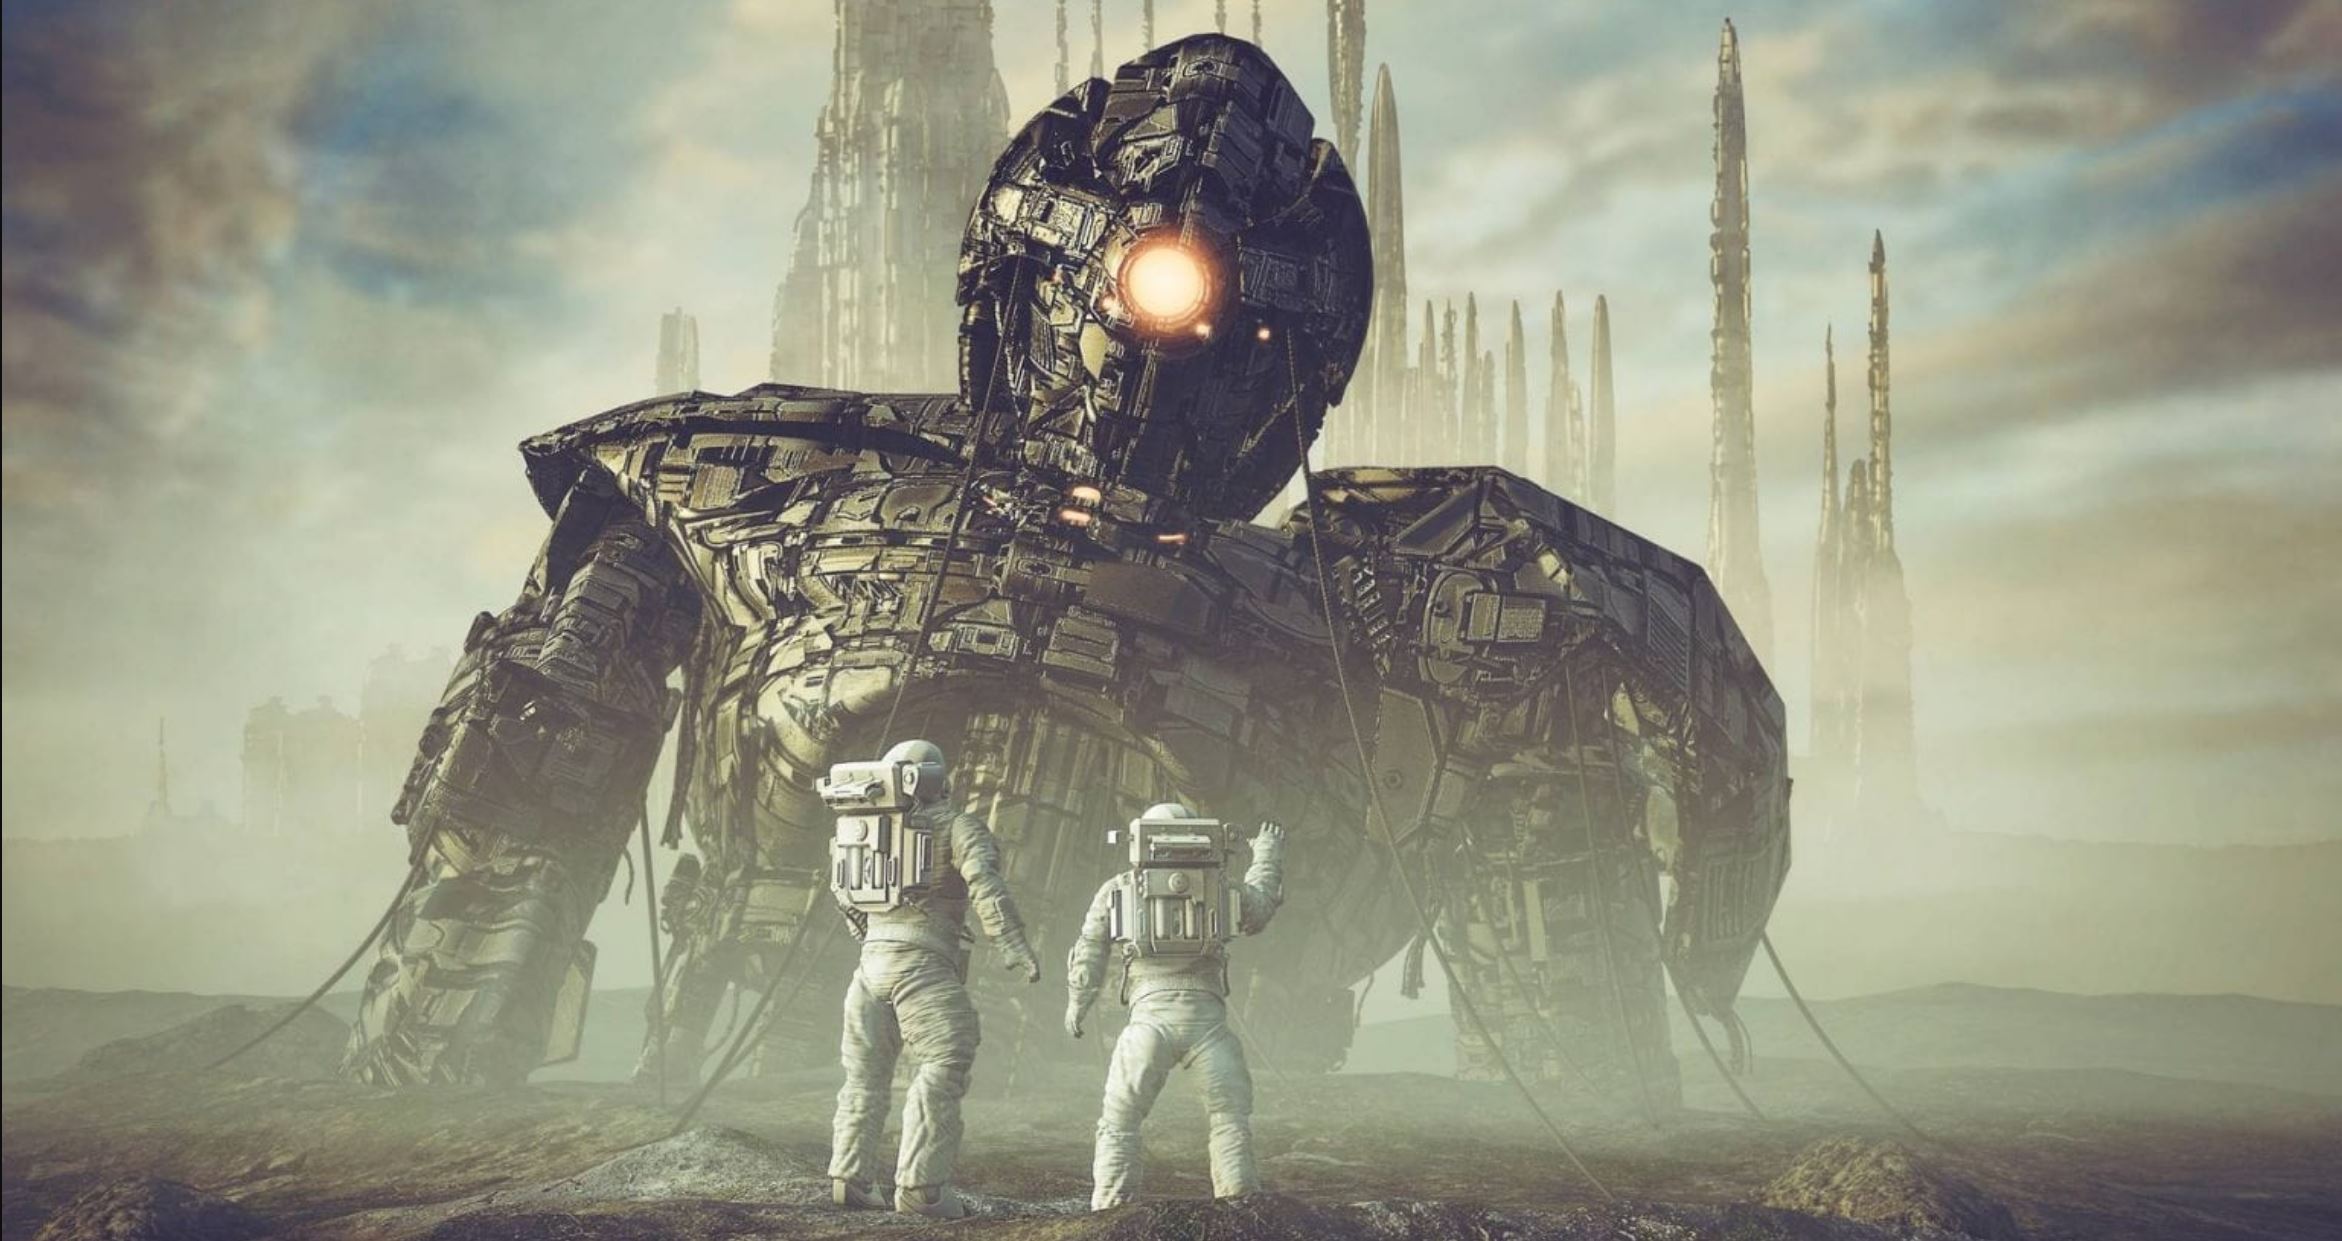 An illustration of an alien self-replicating AI. Shutterstock.